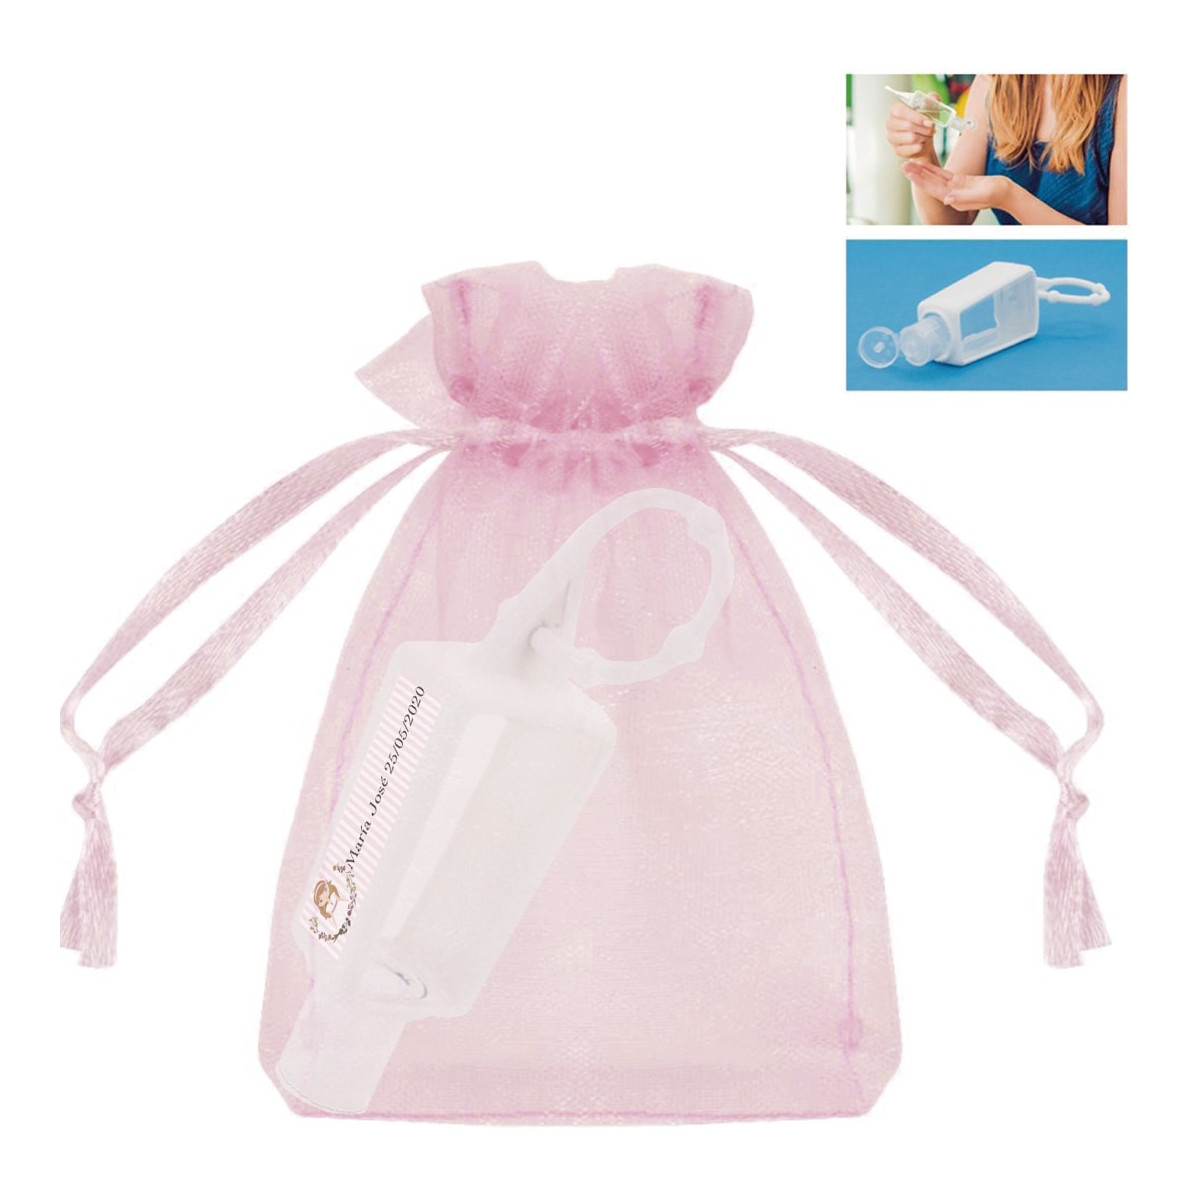 Bote de gel hidroalcohólico rellenable con bolsa de organza para comunión de niña